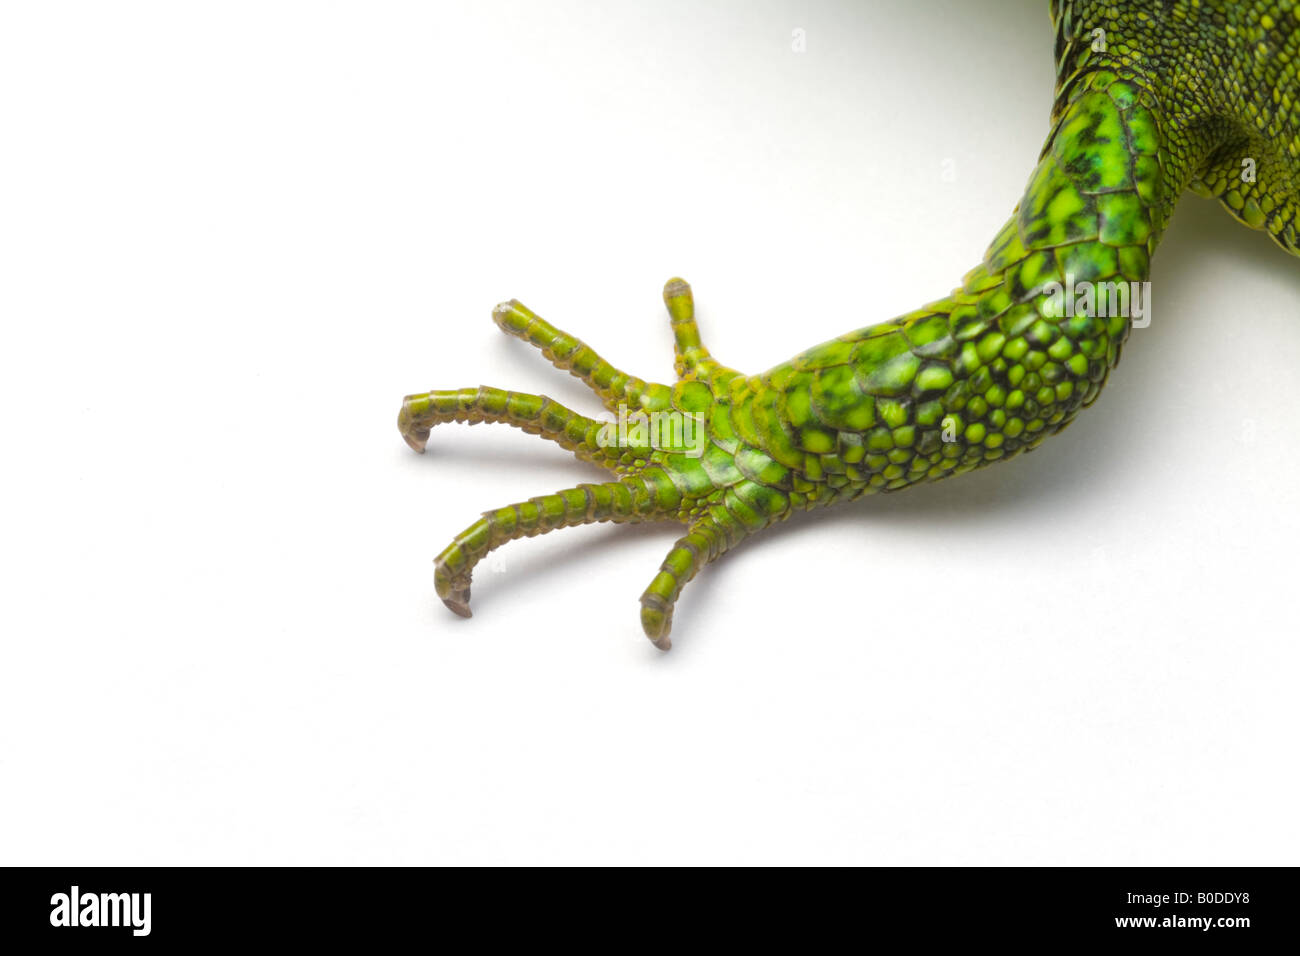 The foreleg of a male green lizard (Lacerta viridis bilineata). Patte avant d'un lézard vert mâle (Lacerta viridis bilineata). Stock Photo